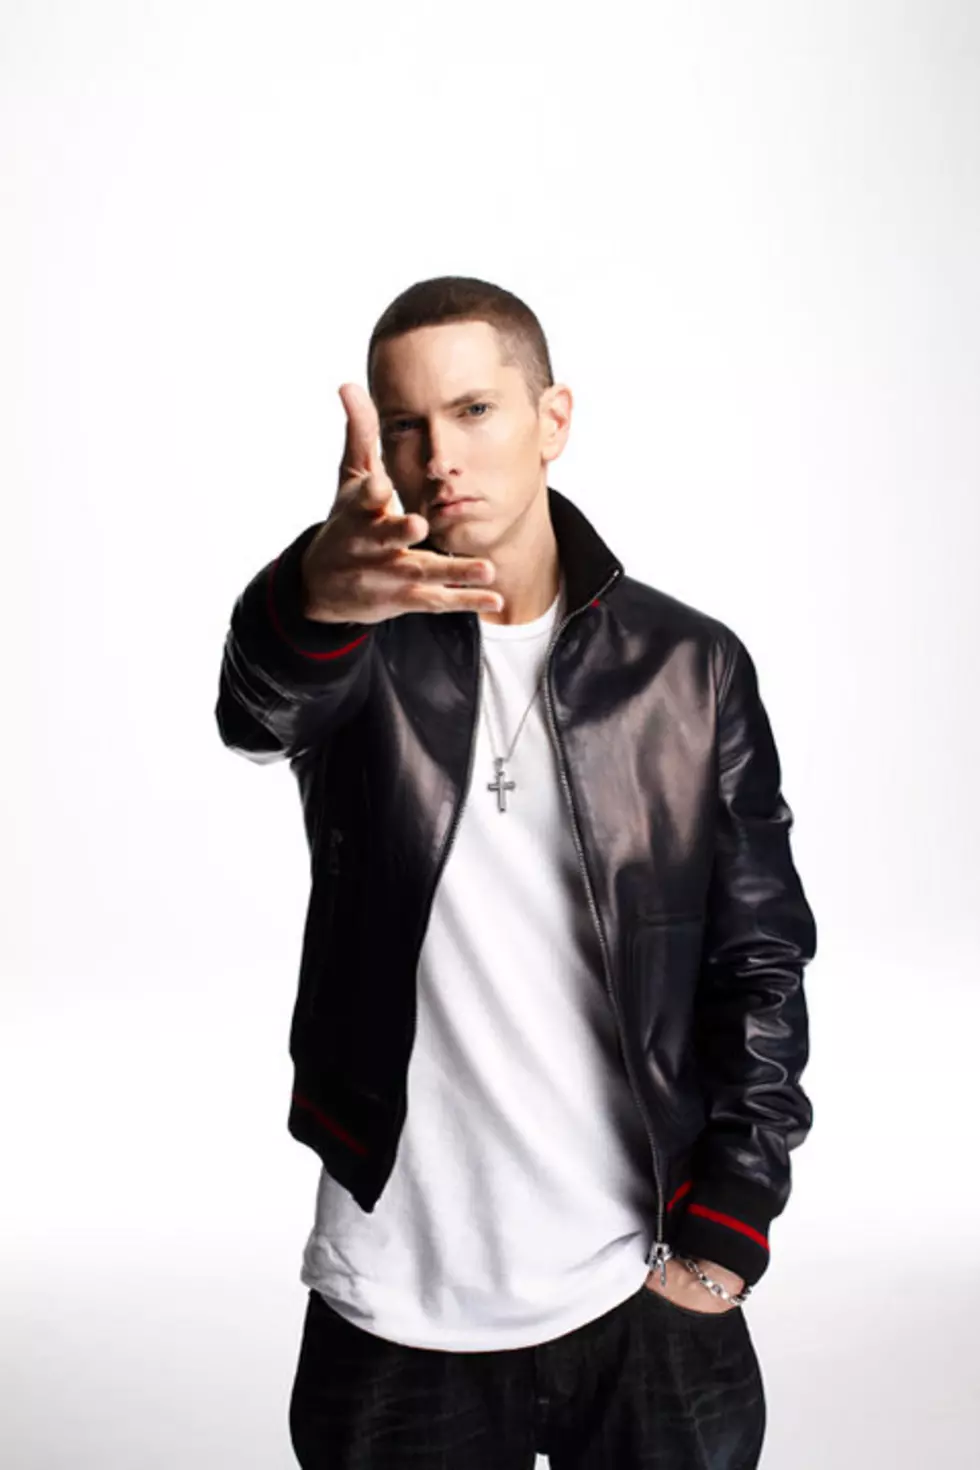 Rolling Stone Devises Hip-Hop Index, Crowns Eminem King